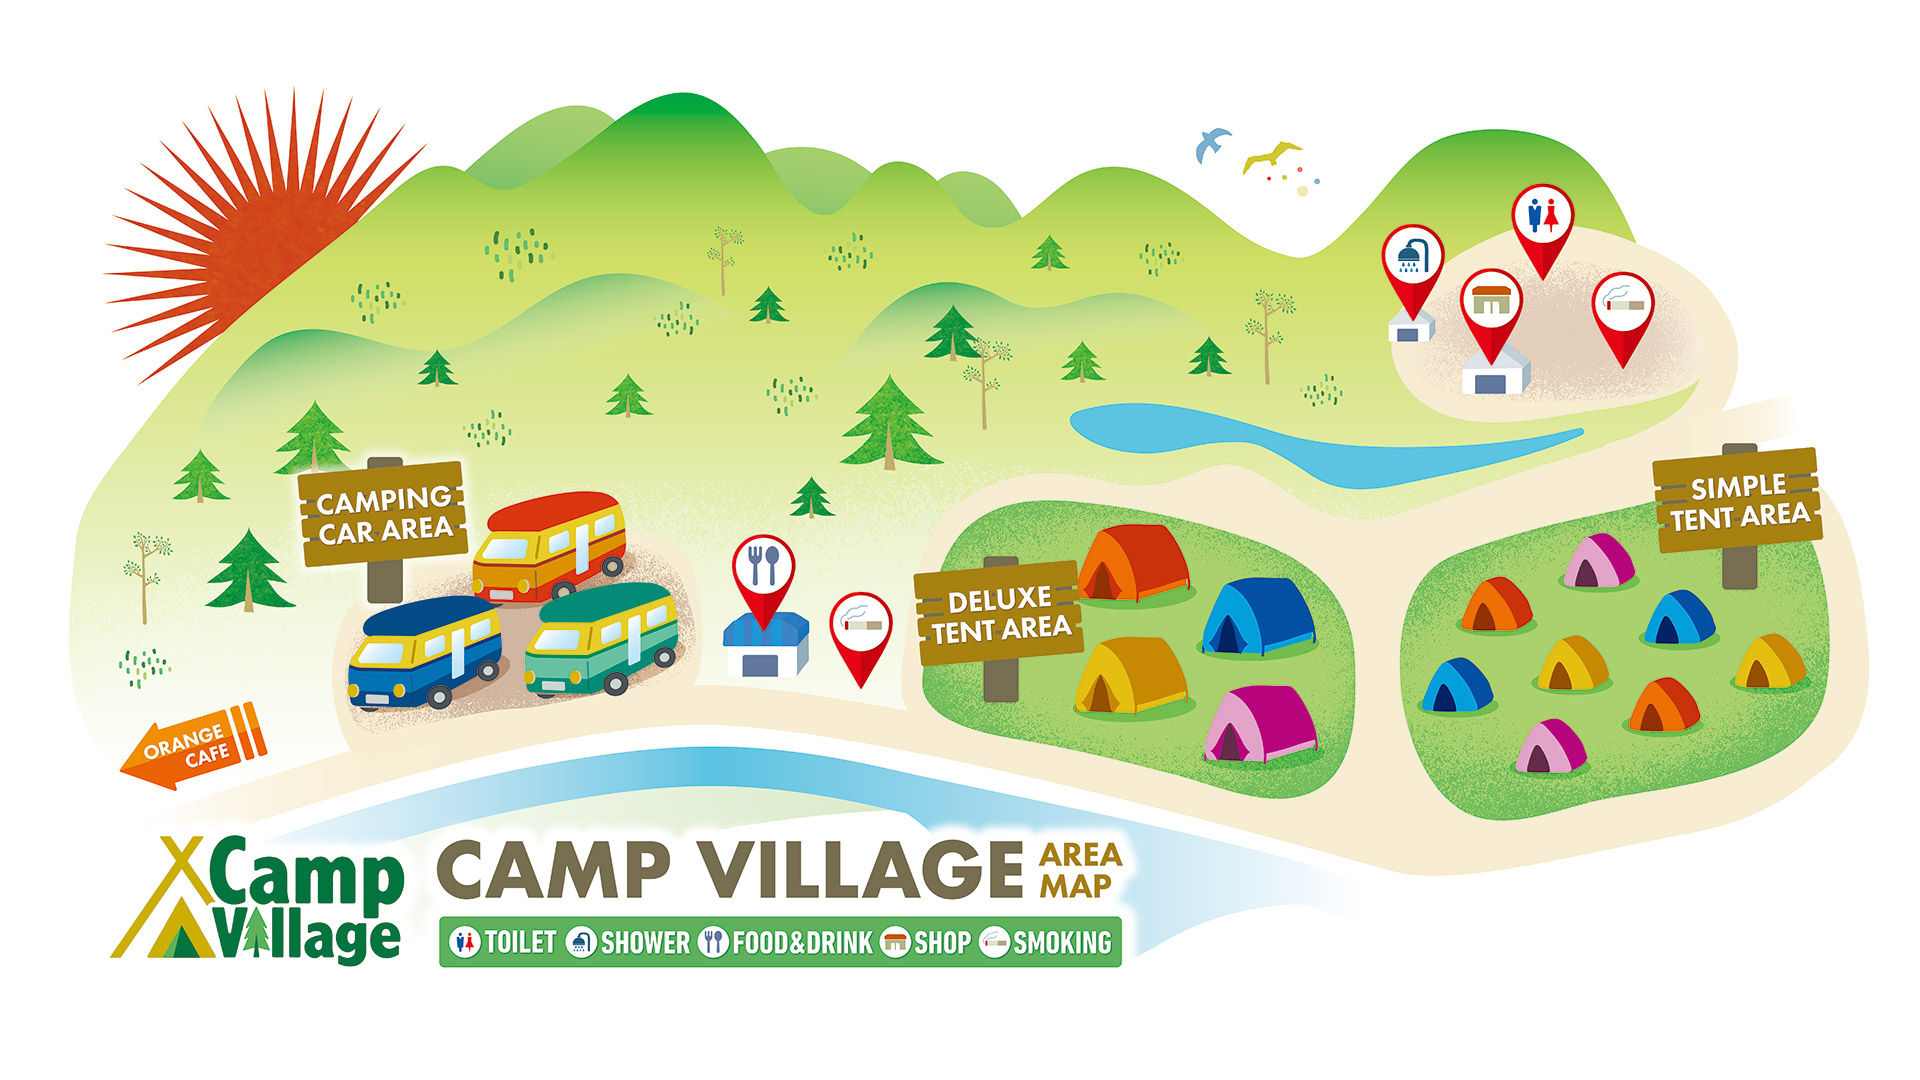 CAMP Village AREA MAP